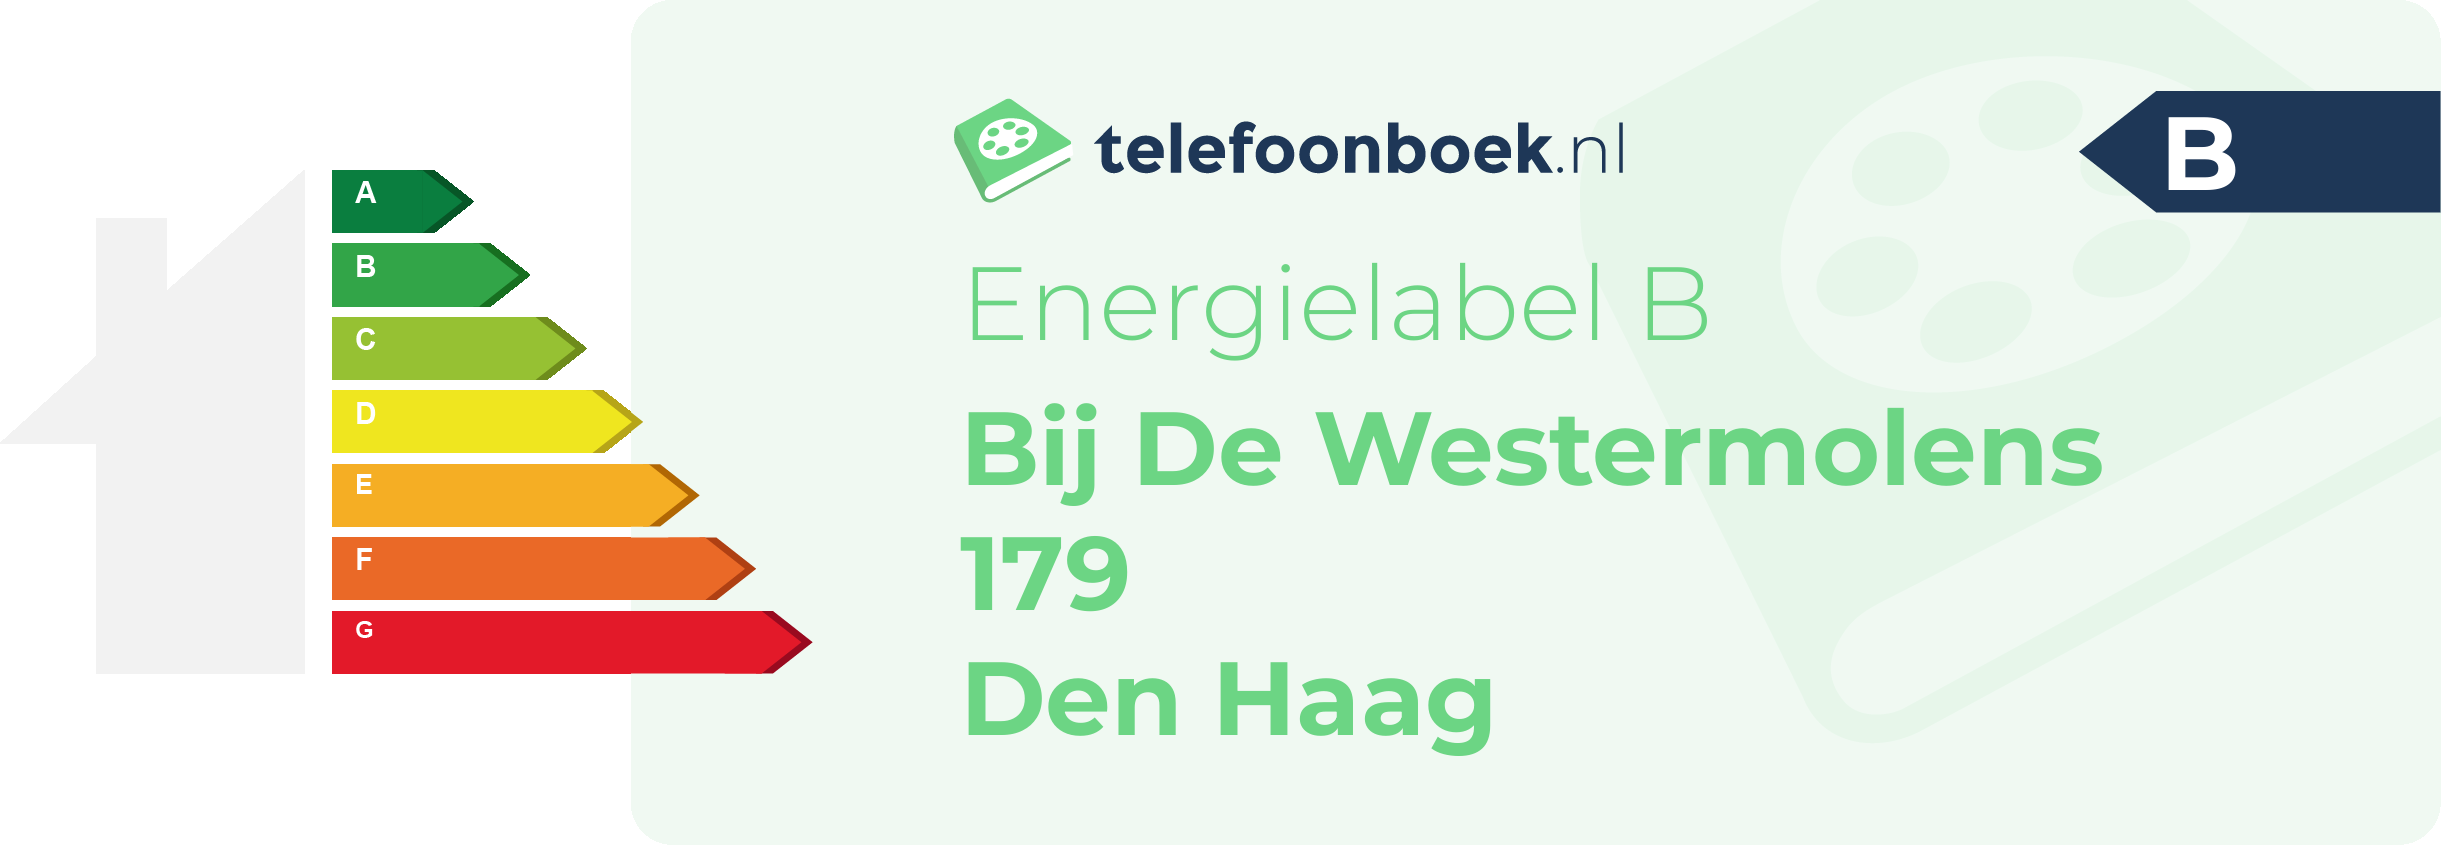 Energielabel Bij De Westermolens 179 Den Haag